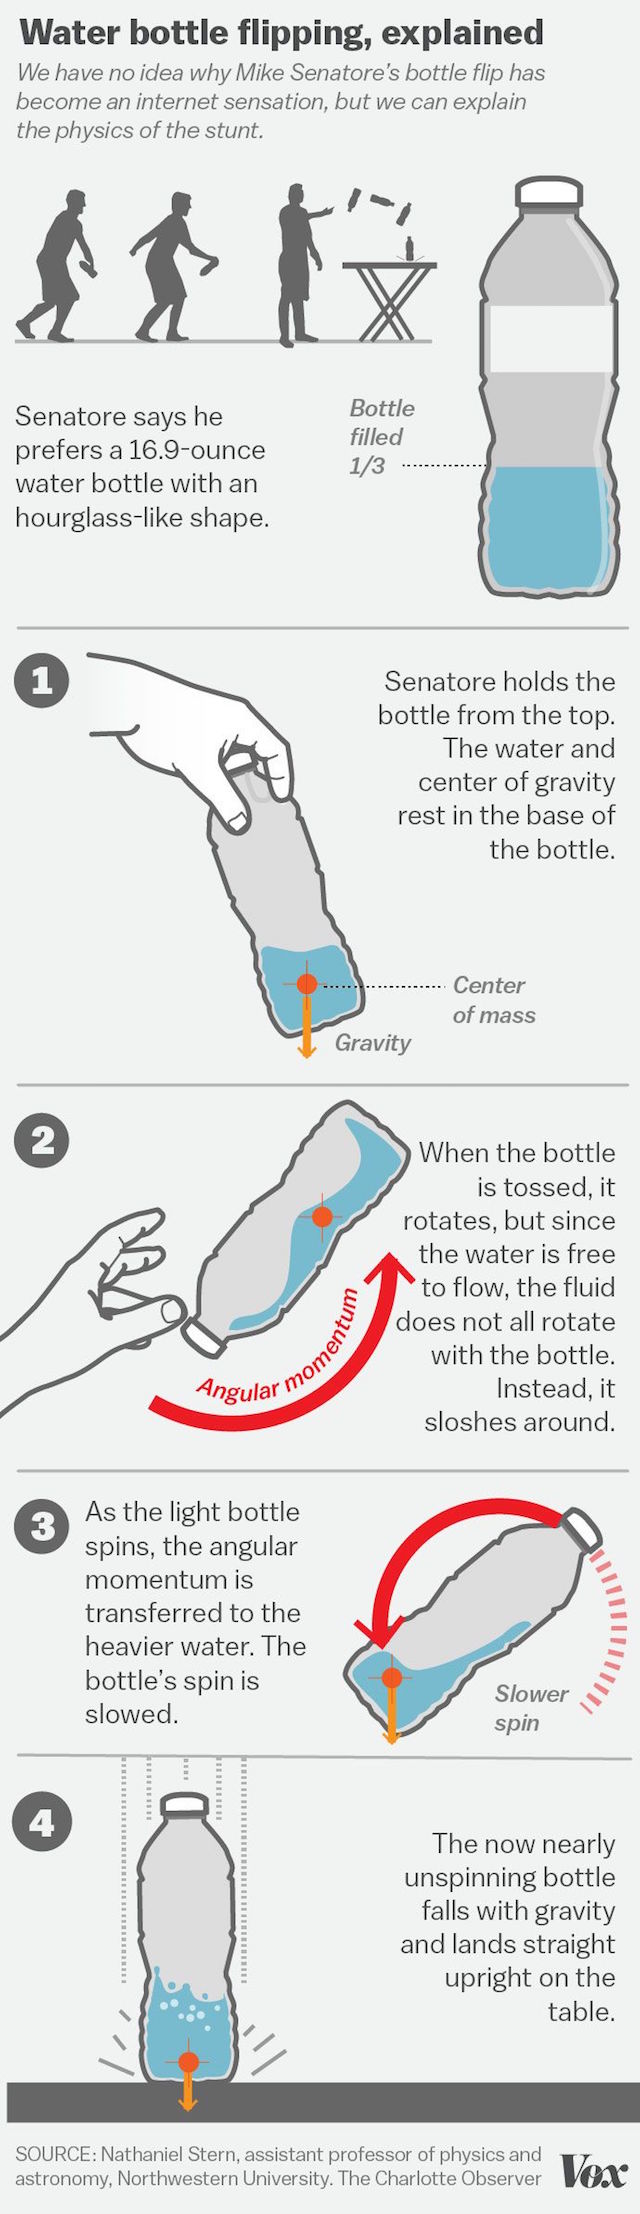 water-bottle4.0